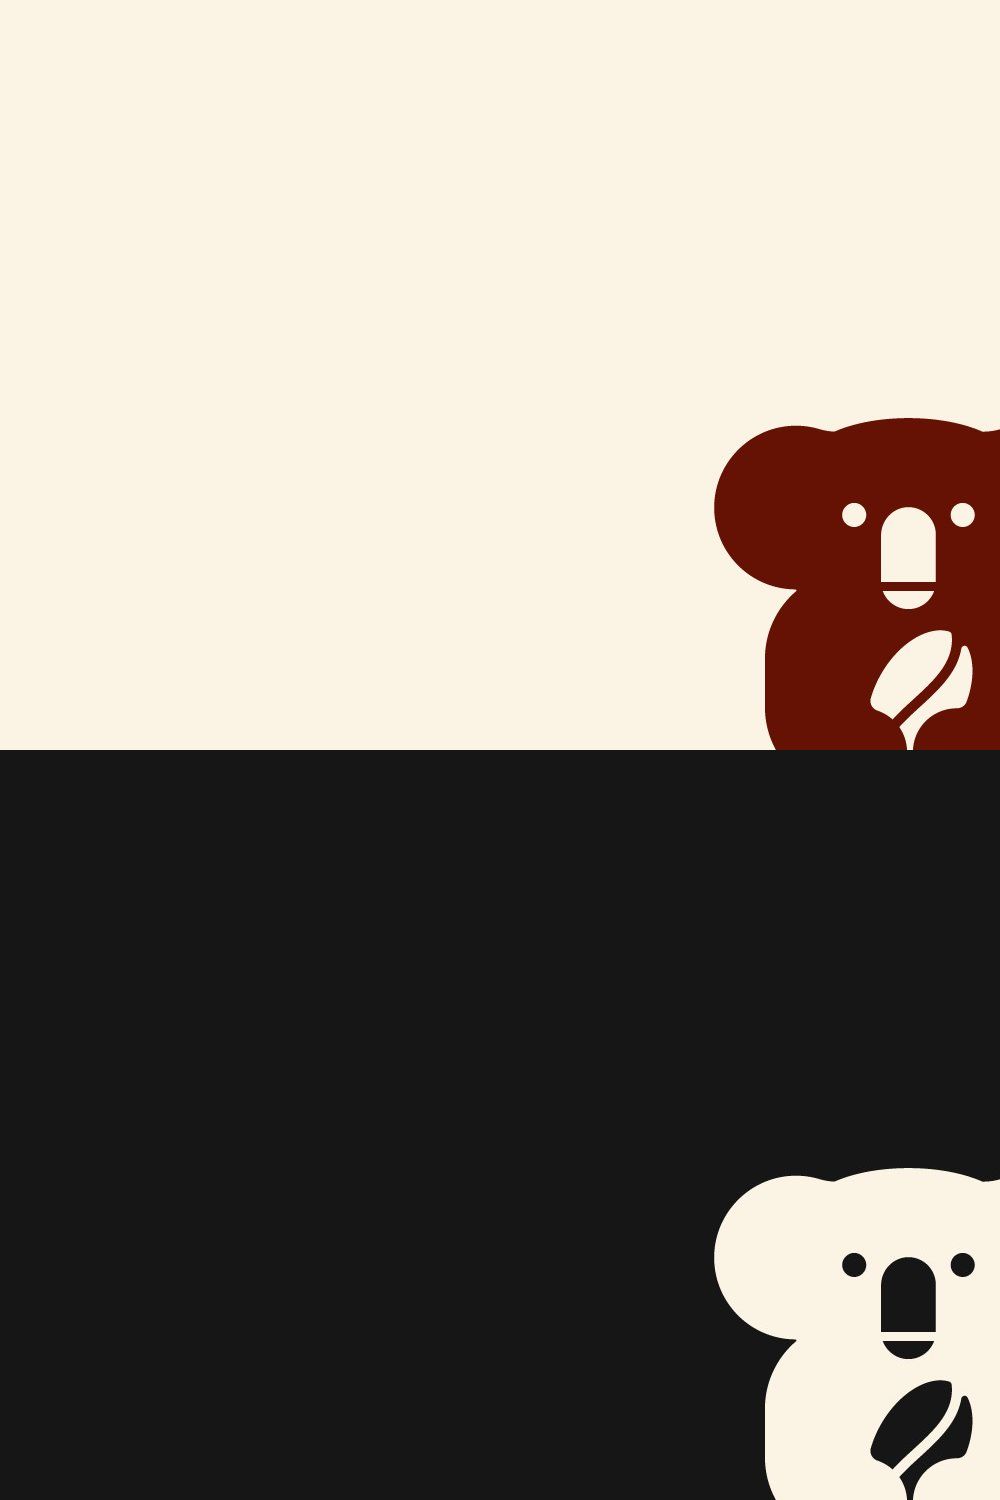 Koala coffee bean logo vector icon pinterest preview image.